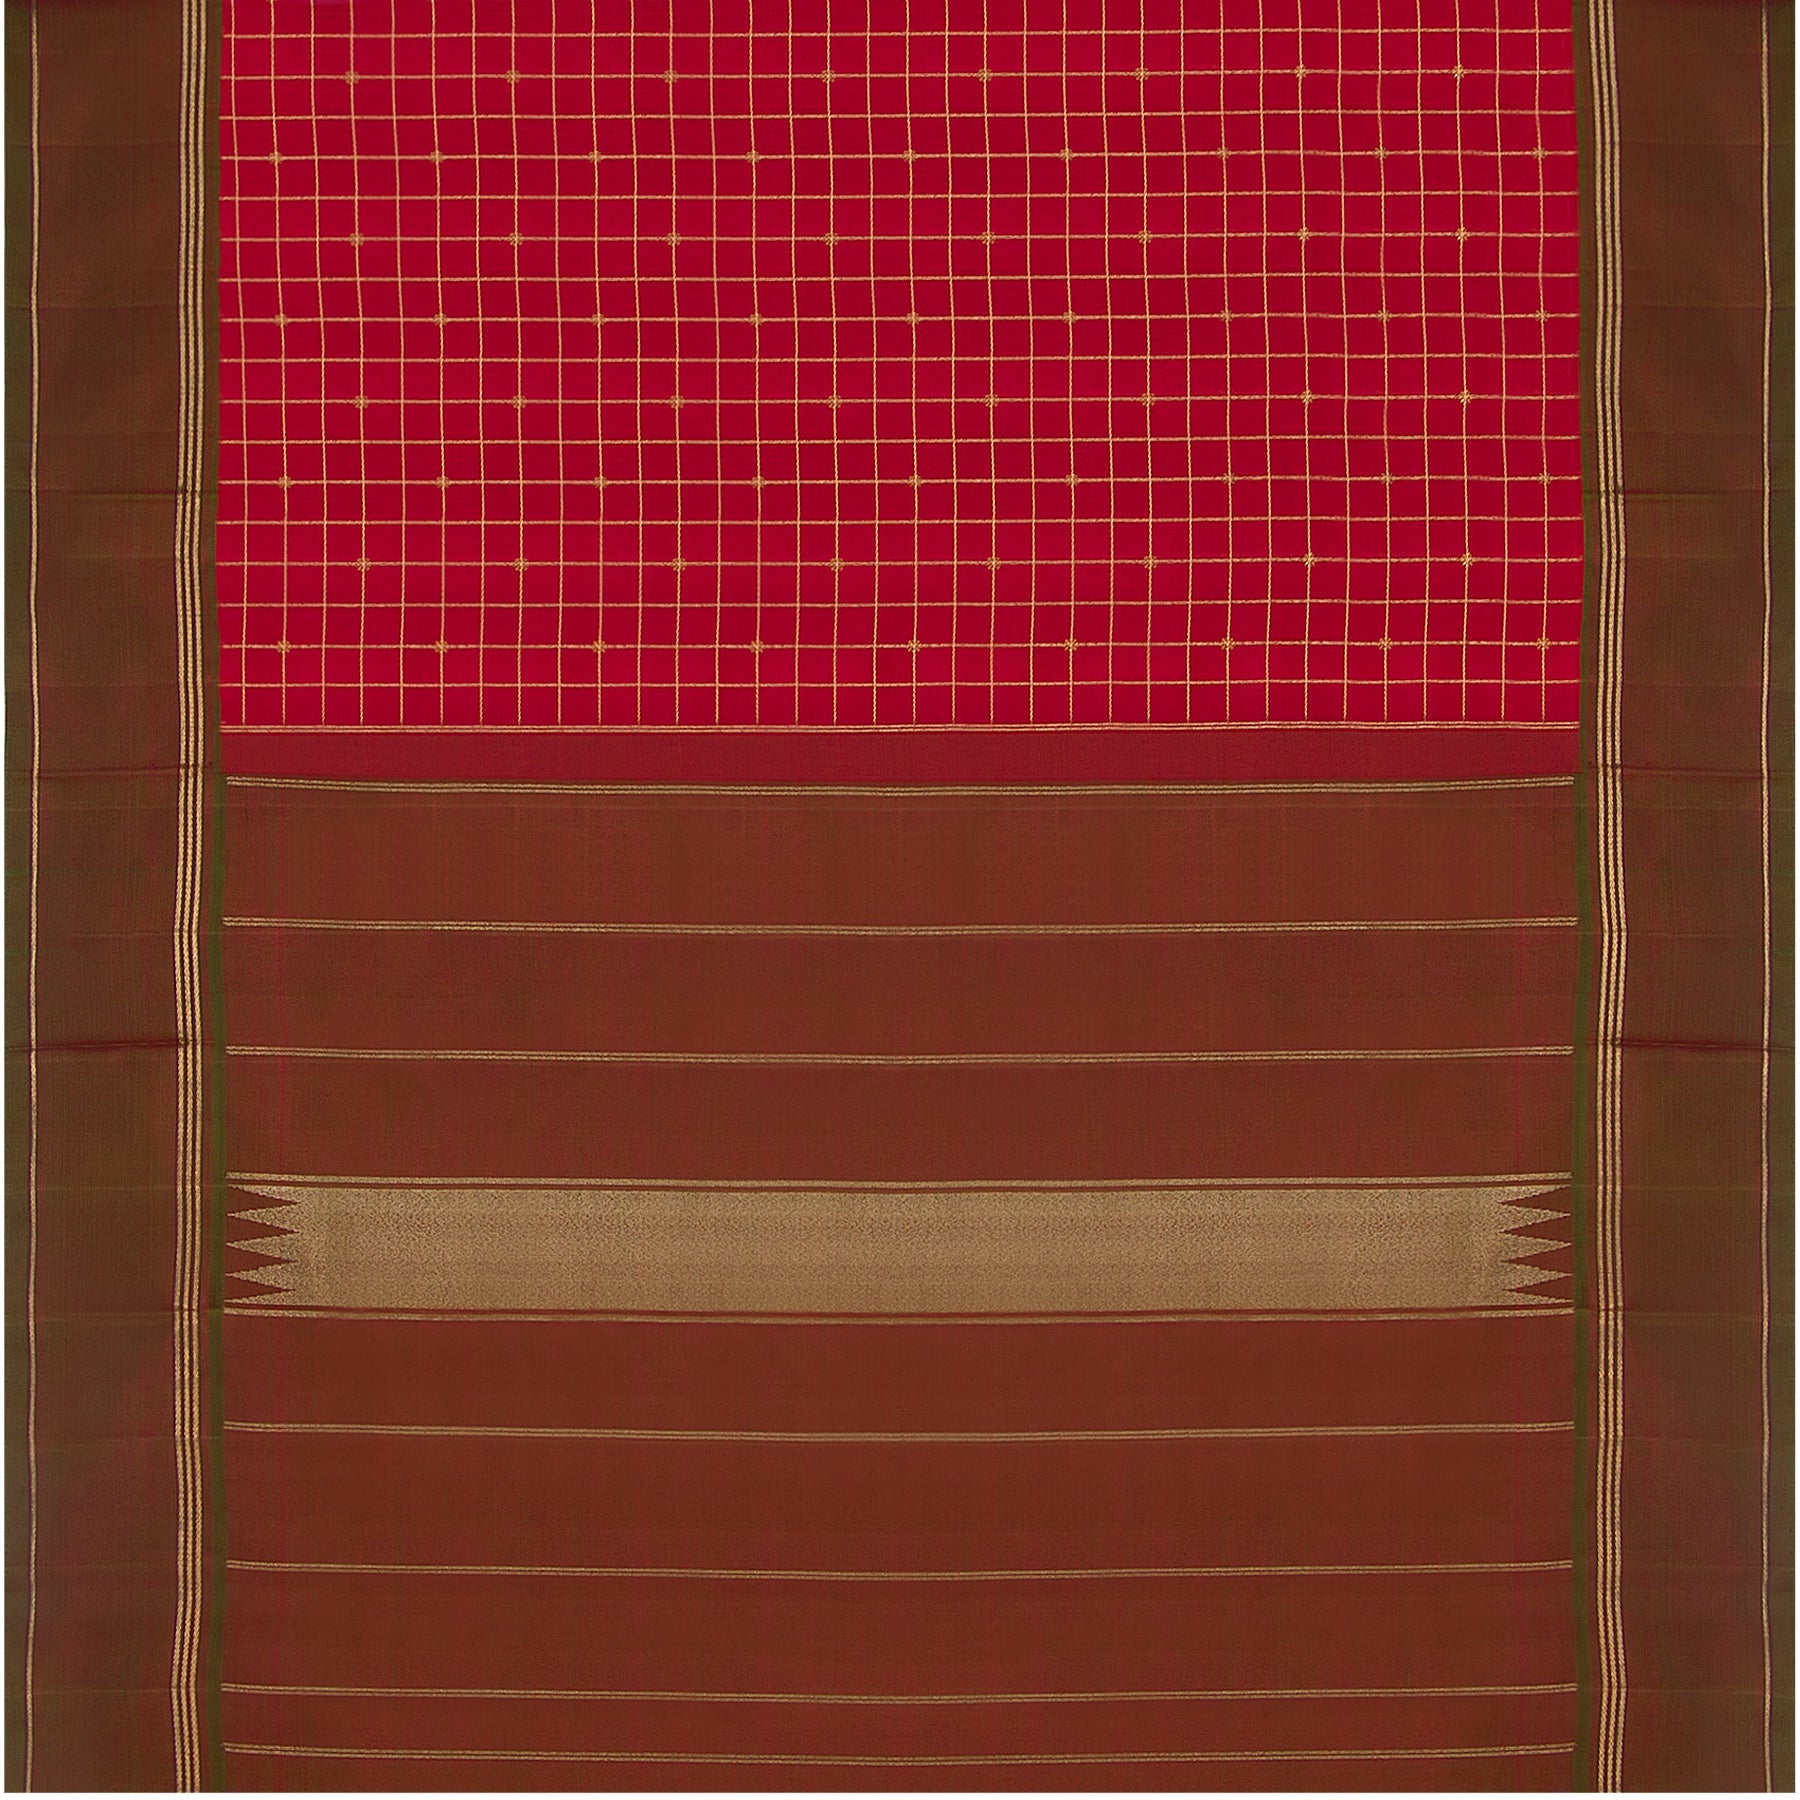 Kanakavalli Kanjivaram Silk Sari 23-560-HS001-01575 - Full View